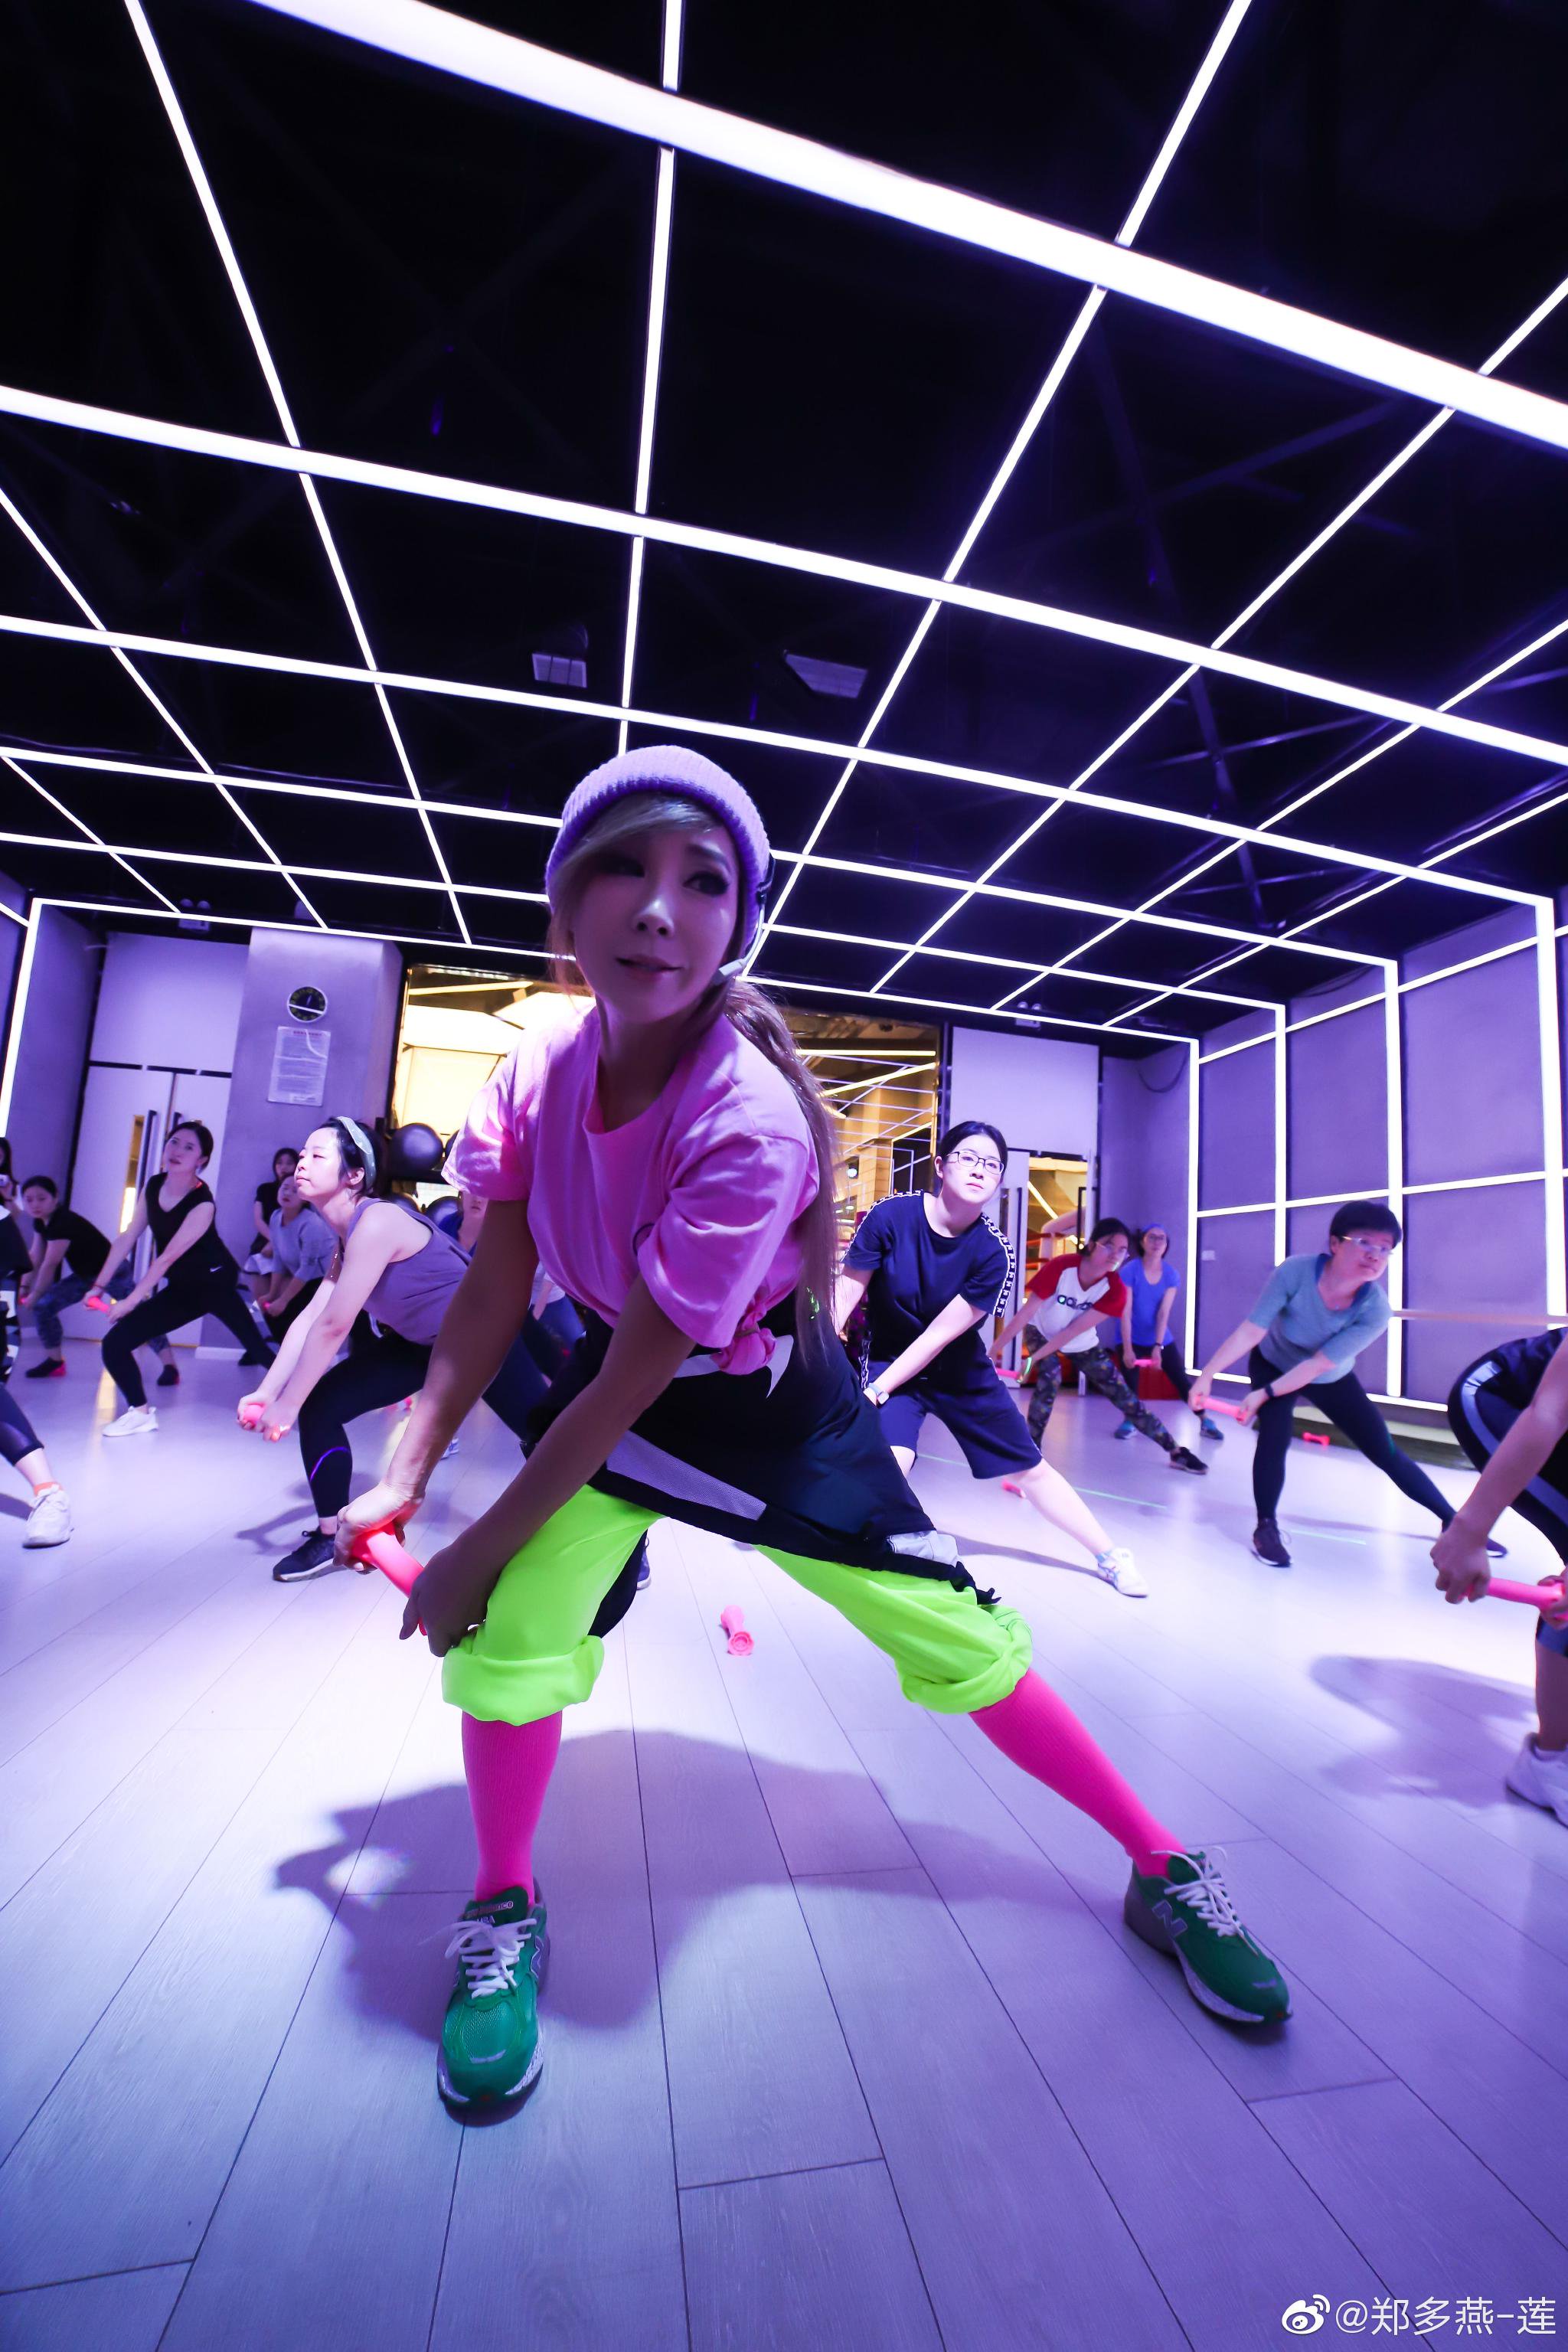 考慮到更多女性受眾群體，鄭多燕在健身操動作的編排和音樂搭配上進行創新。 圖/鄭多燕微博